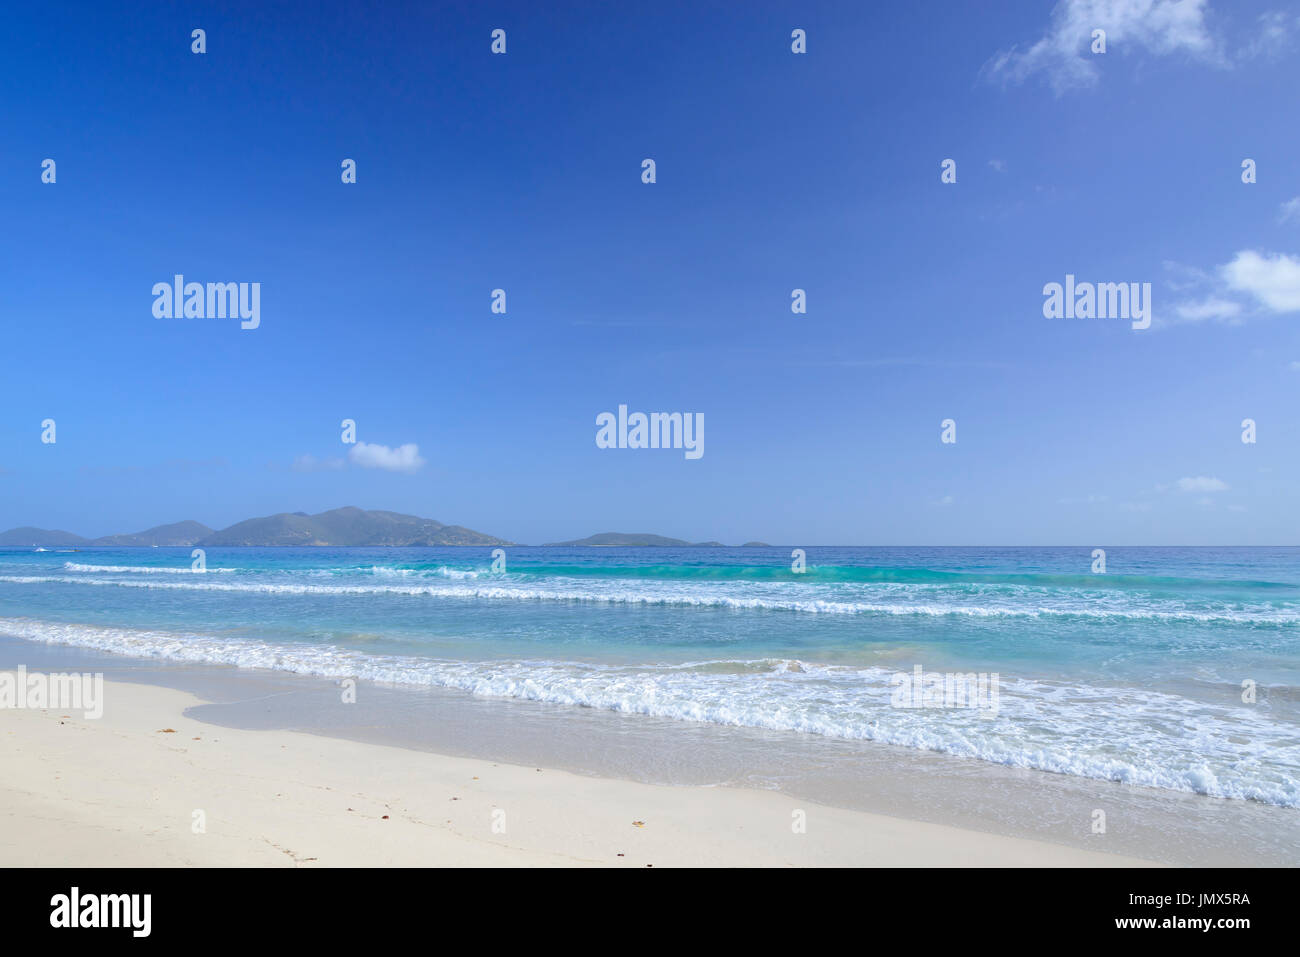 Plage de sable fin et des vagues, l'île de Tortola, British Virgin Islands, mer des Caraïbes Banque D'Images